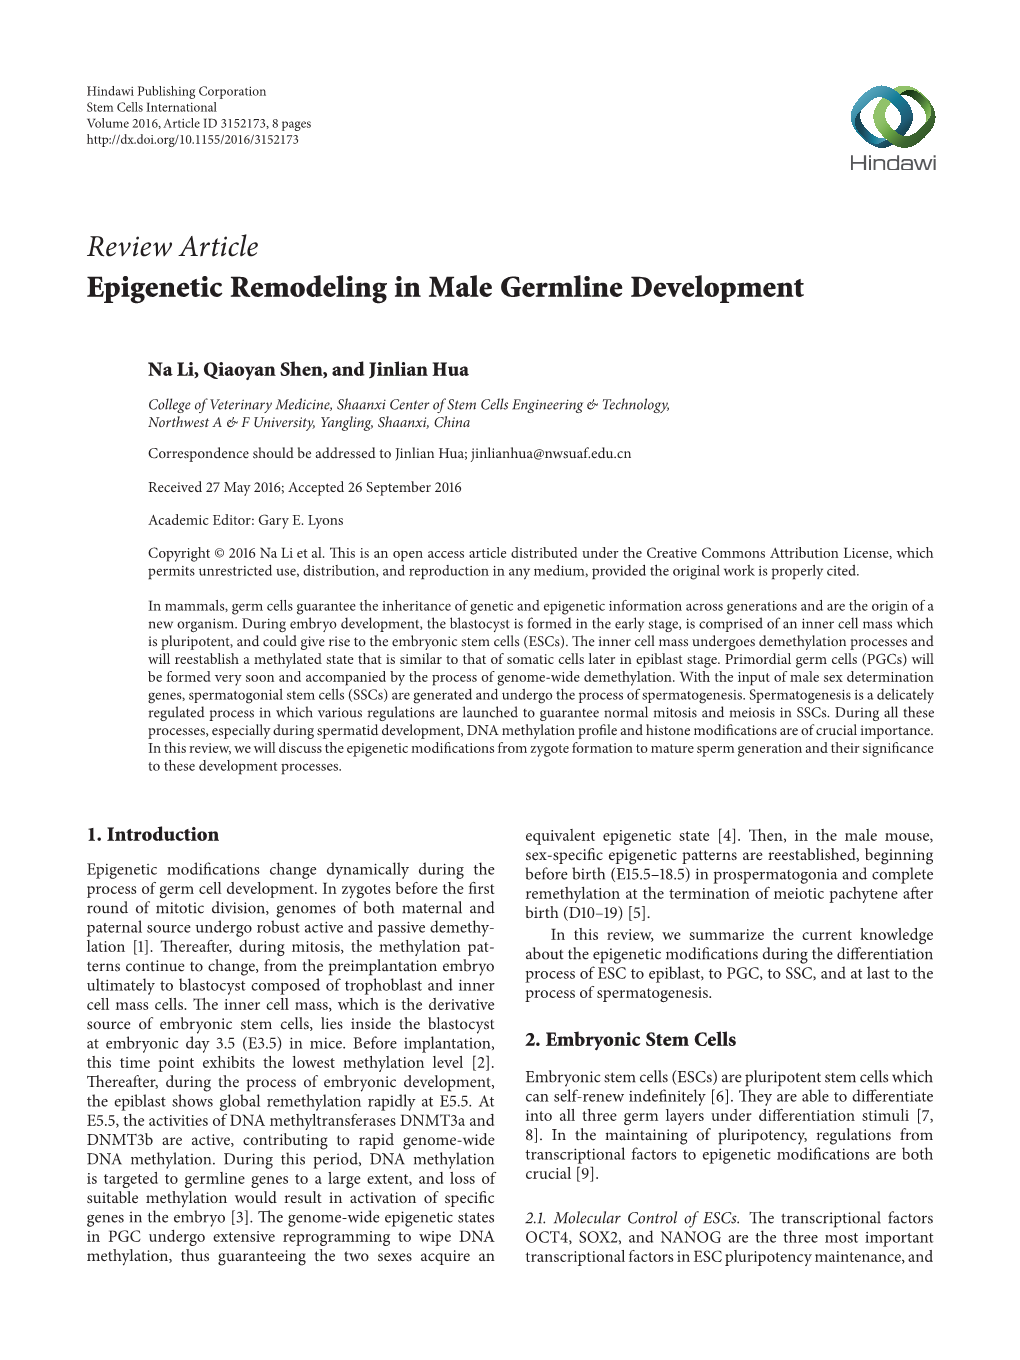 Epigenetic Remodeling in Male Germline Development